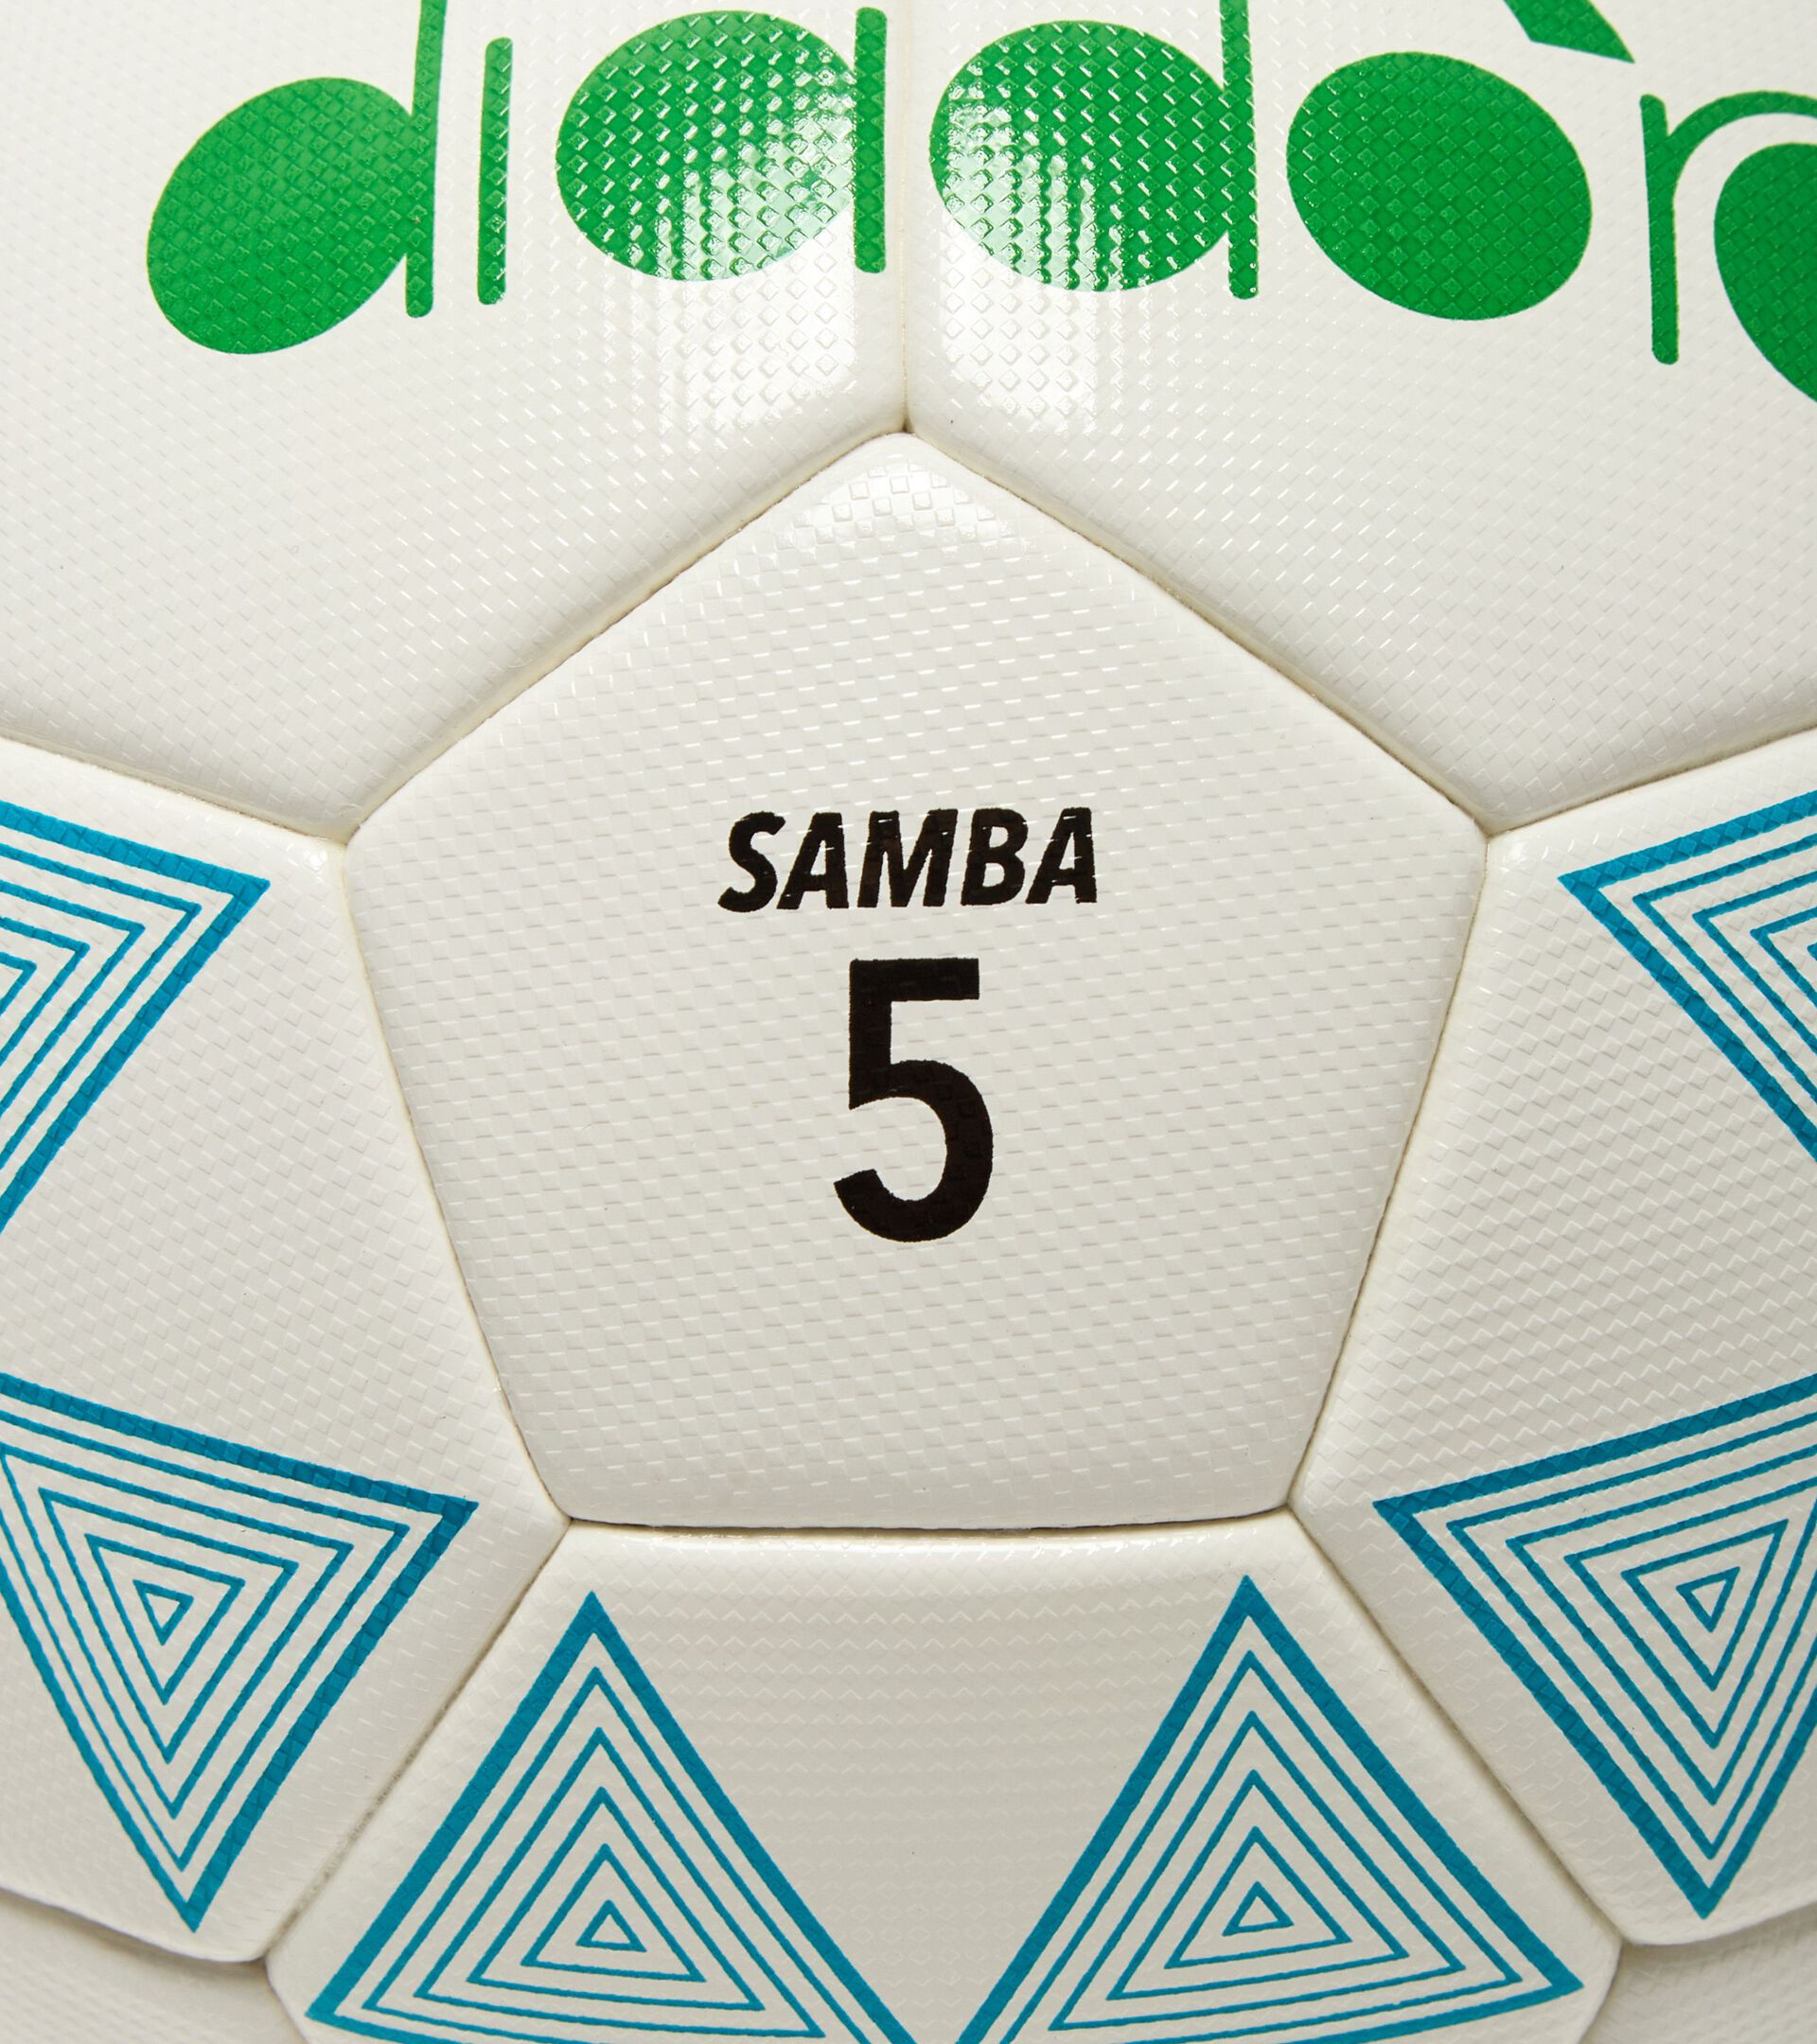 Ballon de football - taille 5 SAMBA 5 BIANCO/TURCHESE - Diadora